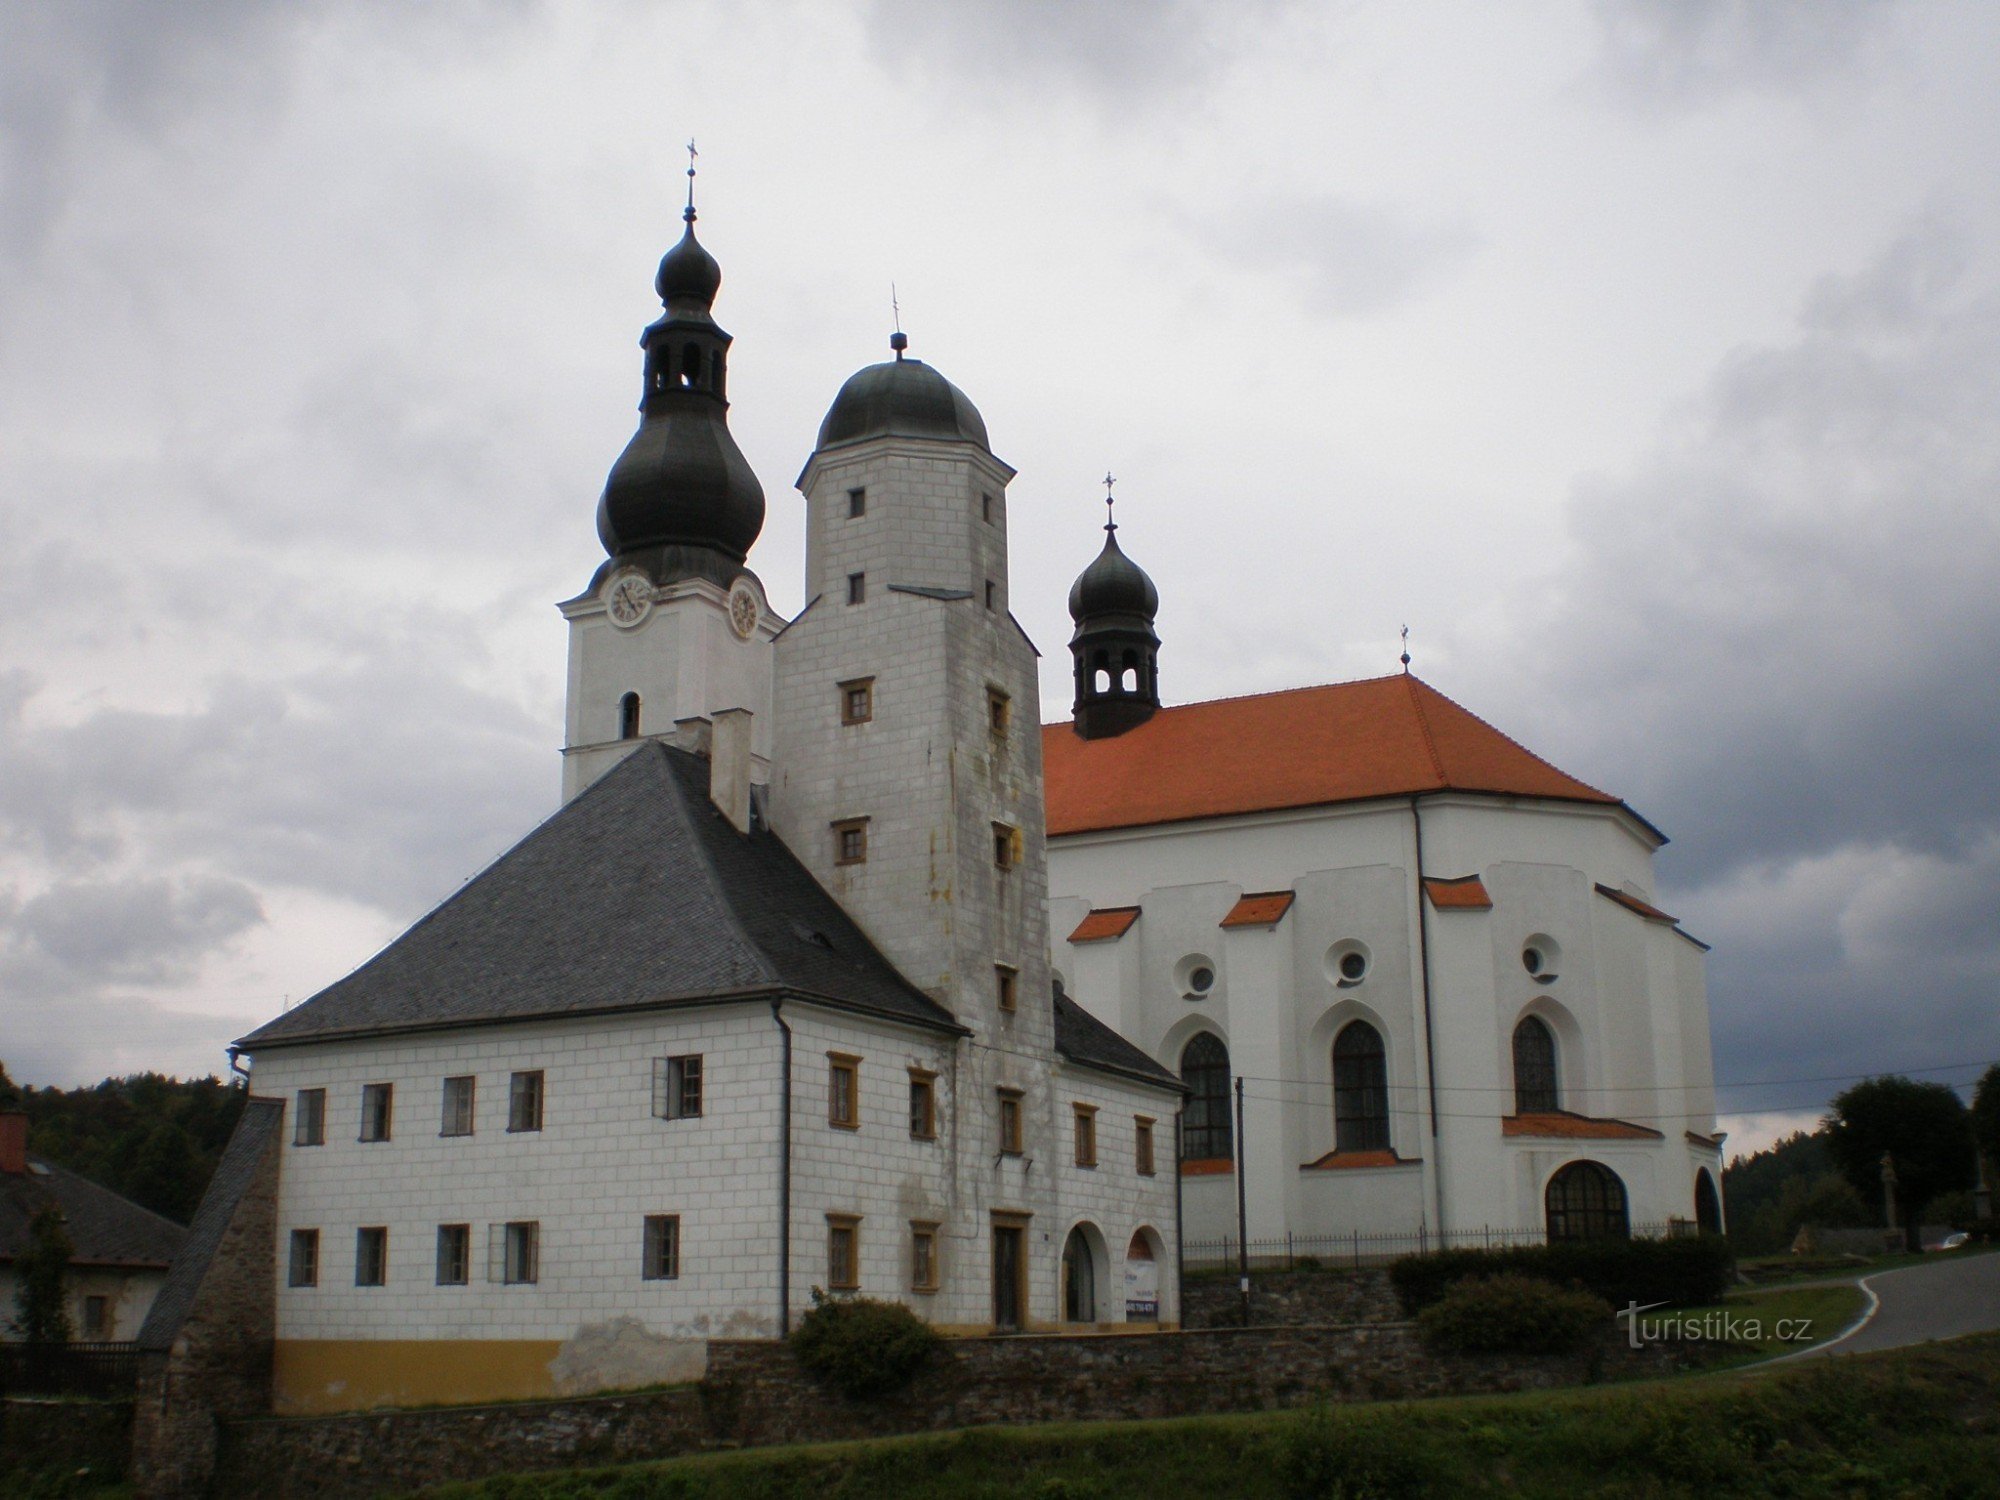 Branná - zamek i kościół